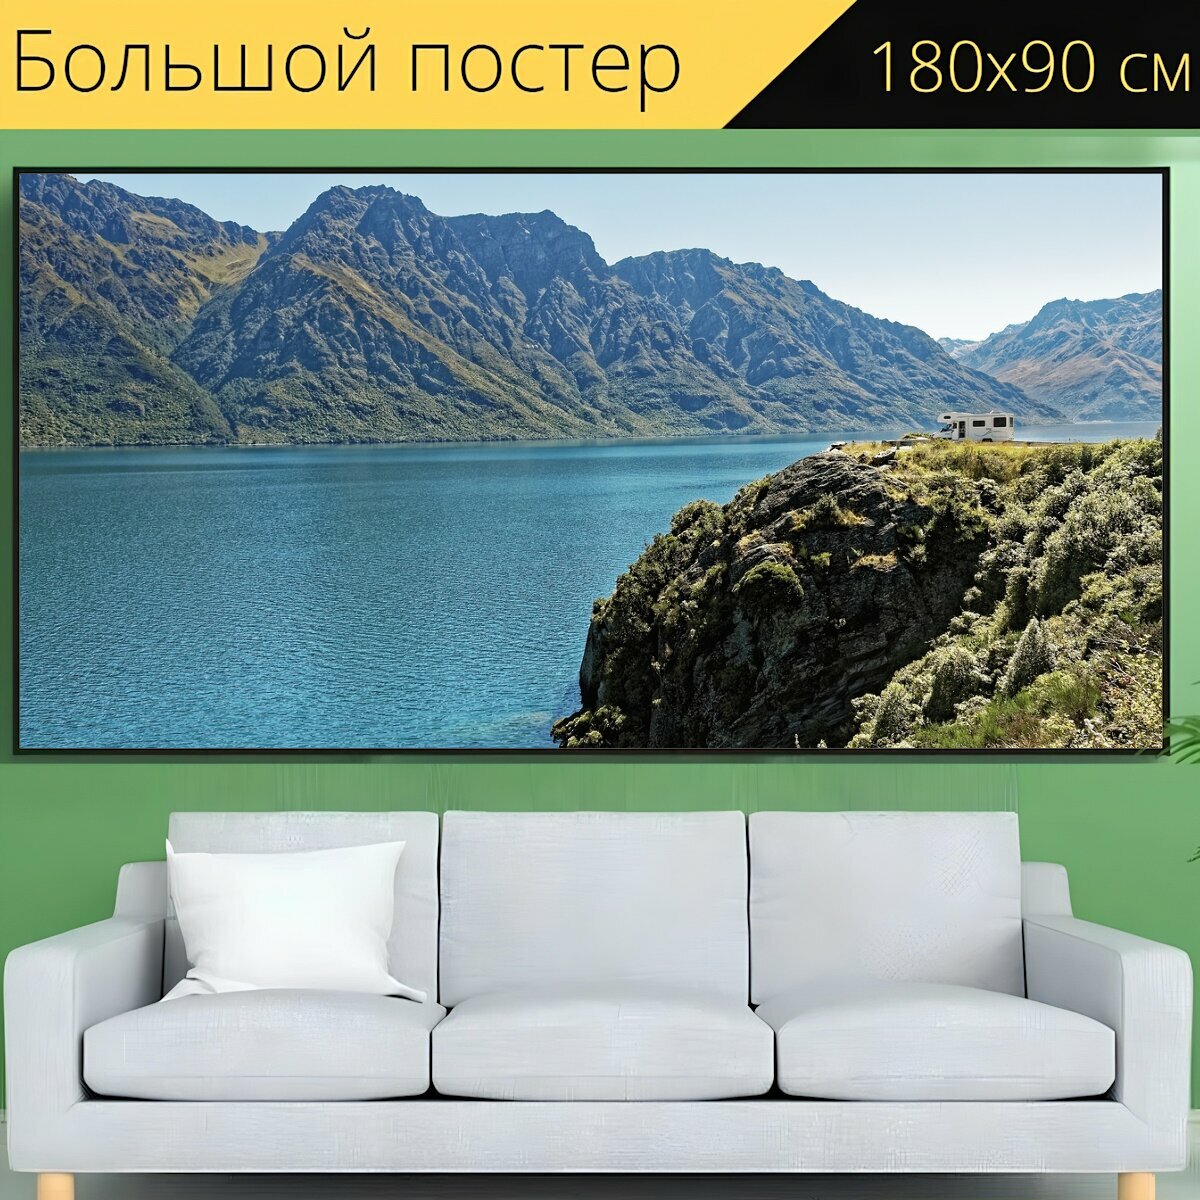 Большой постер "Новая зеландия, озеро вакатипу, озеро" 180 x 90 см. для интерьера